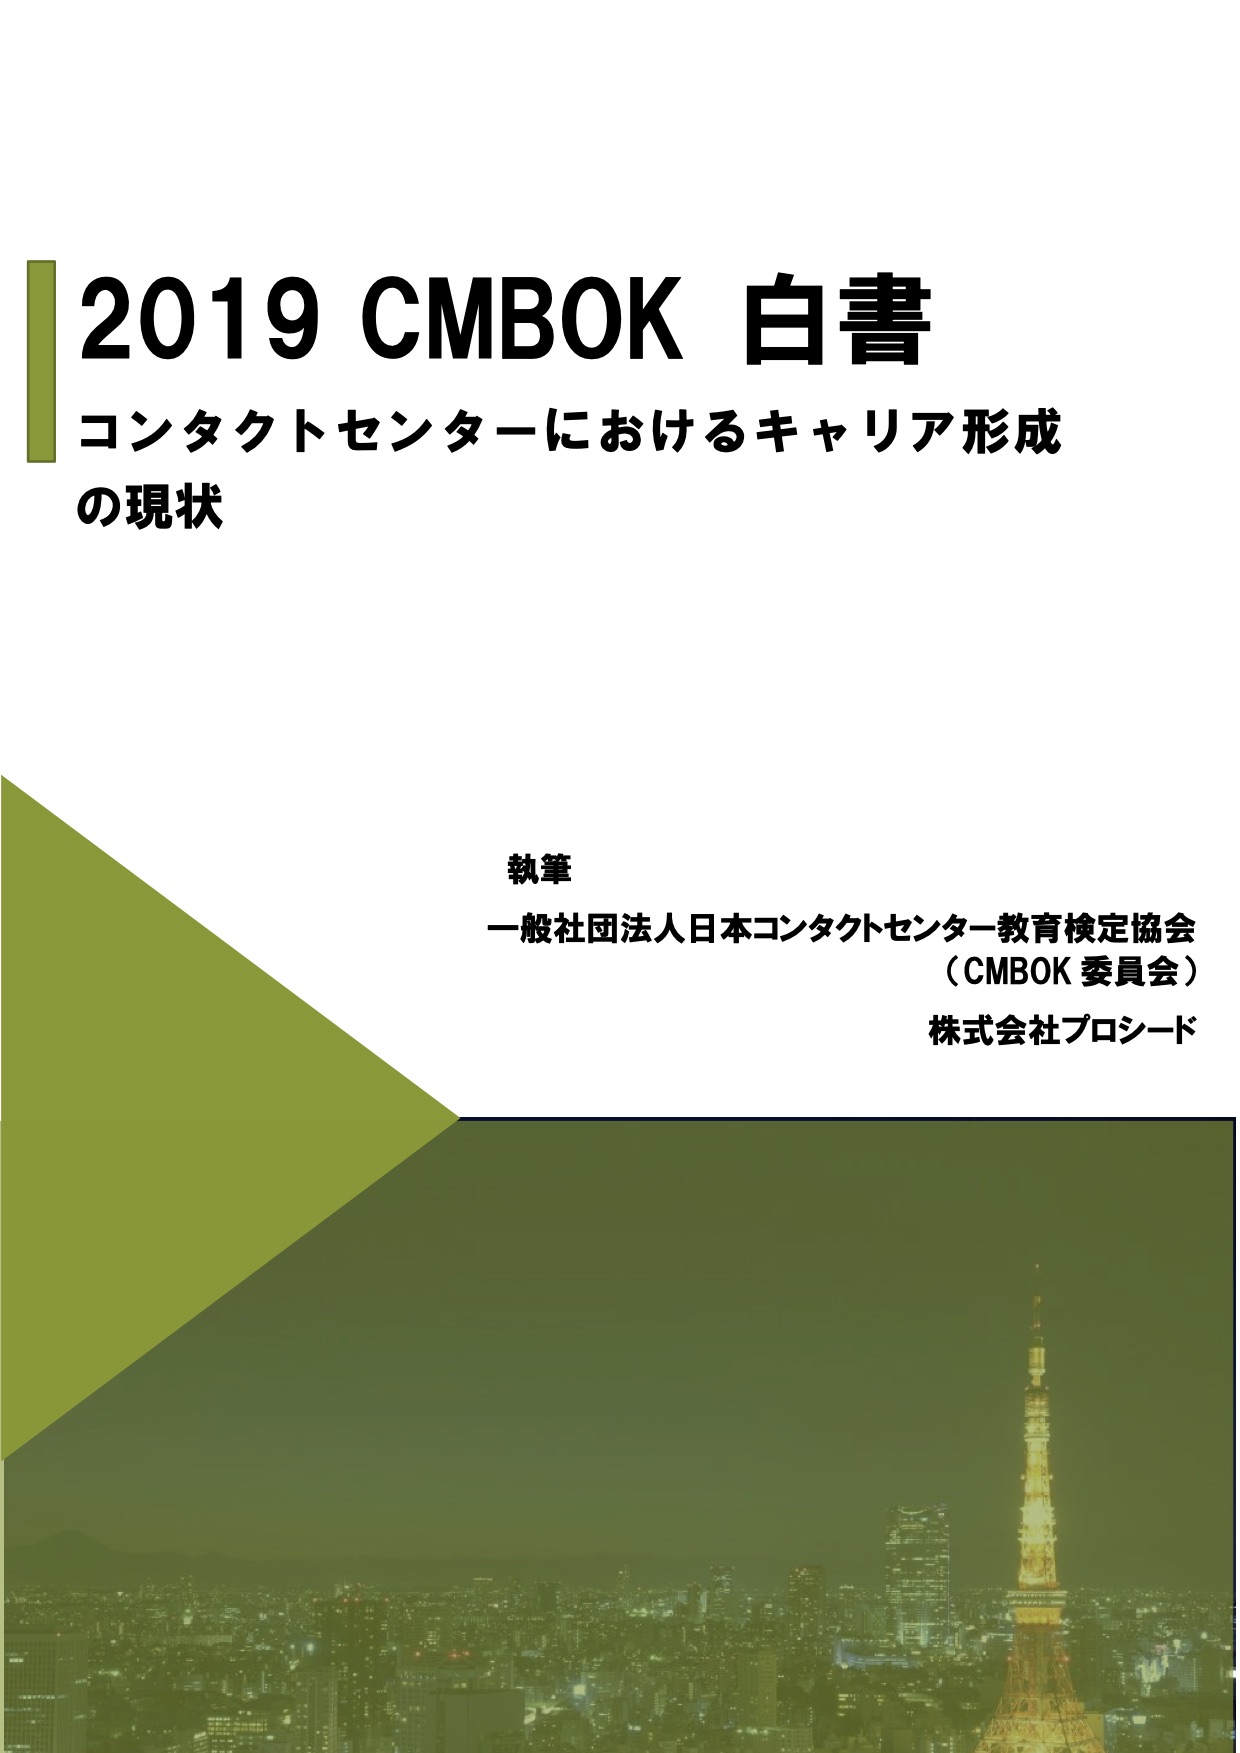 CMBOK 白書Vol.1